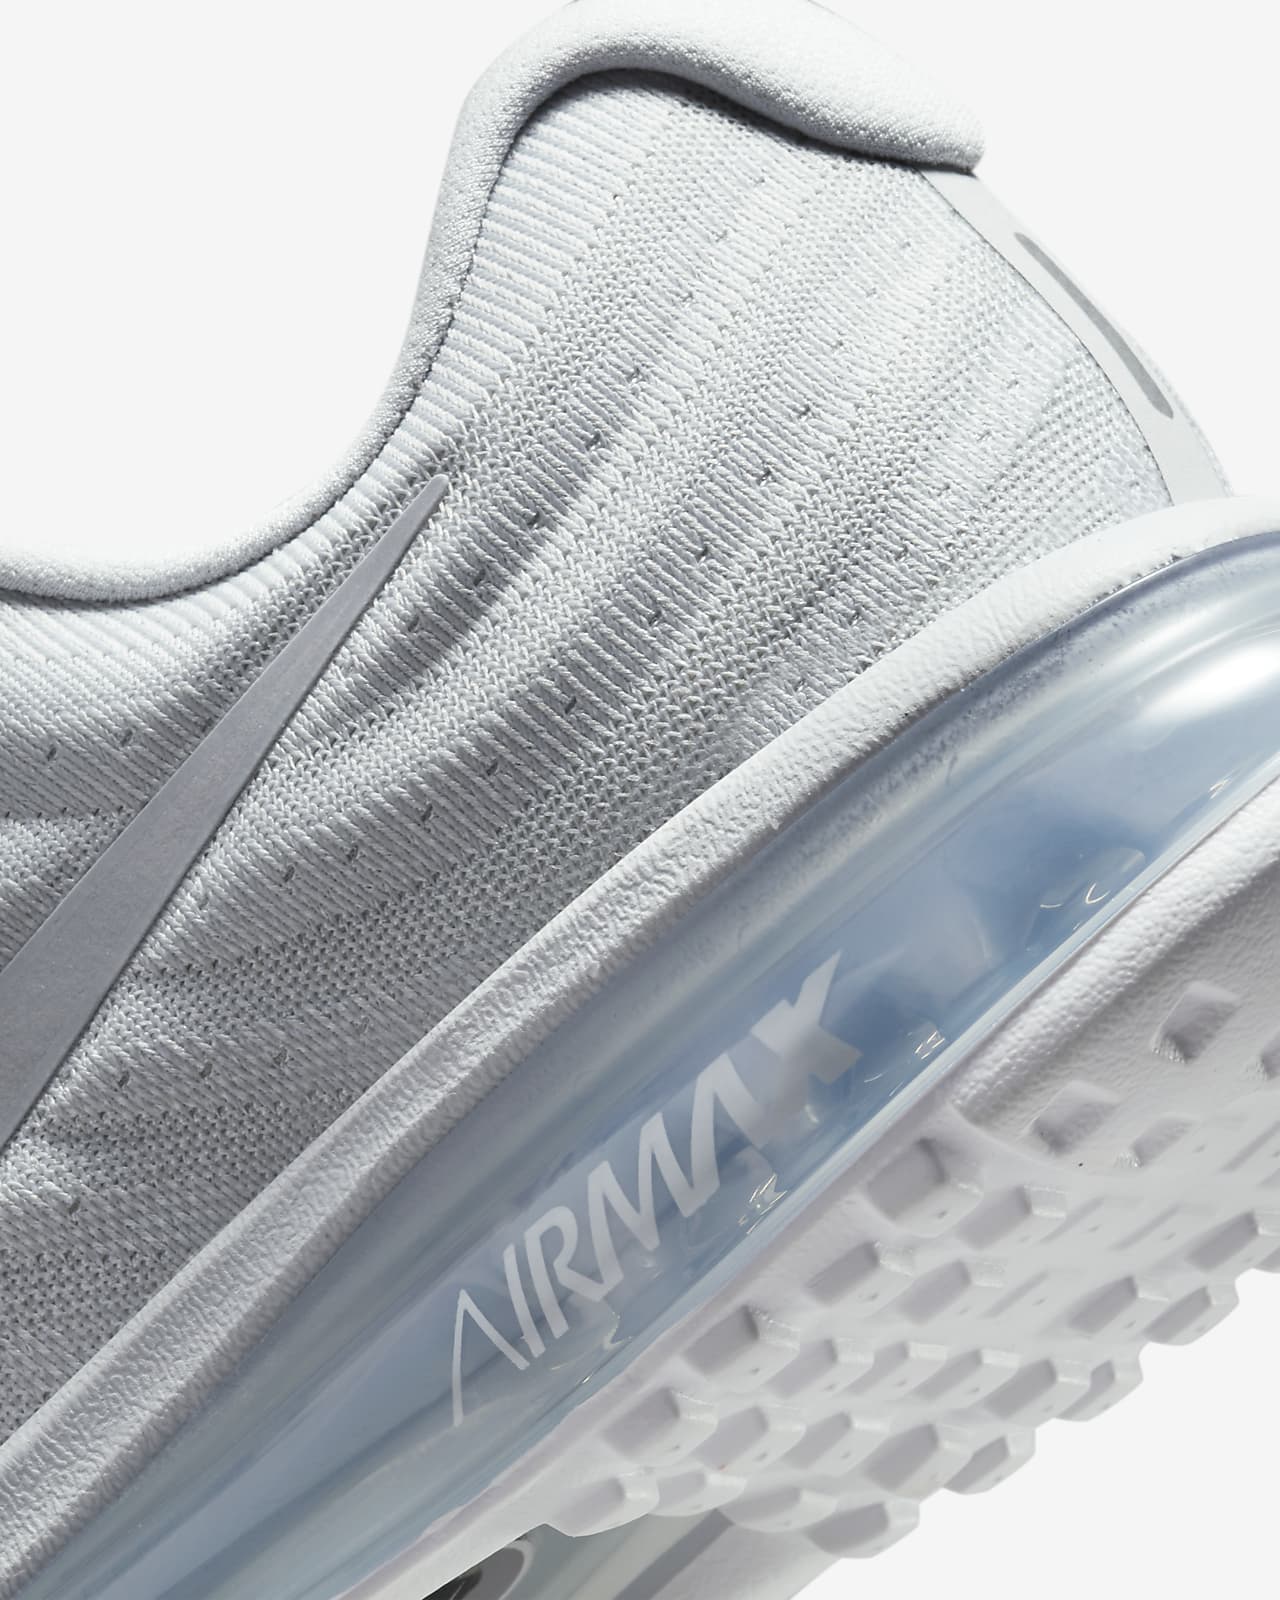 Gracia aprobar Despedida Calzado Nike Air Max 2017 para hombre. Nike.com